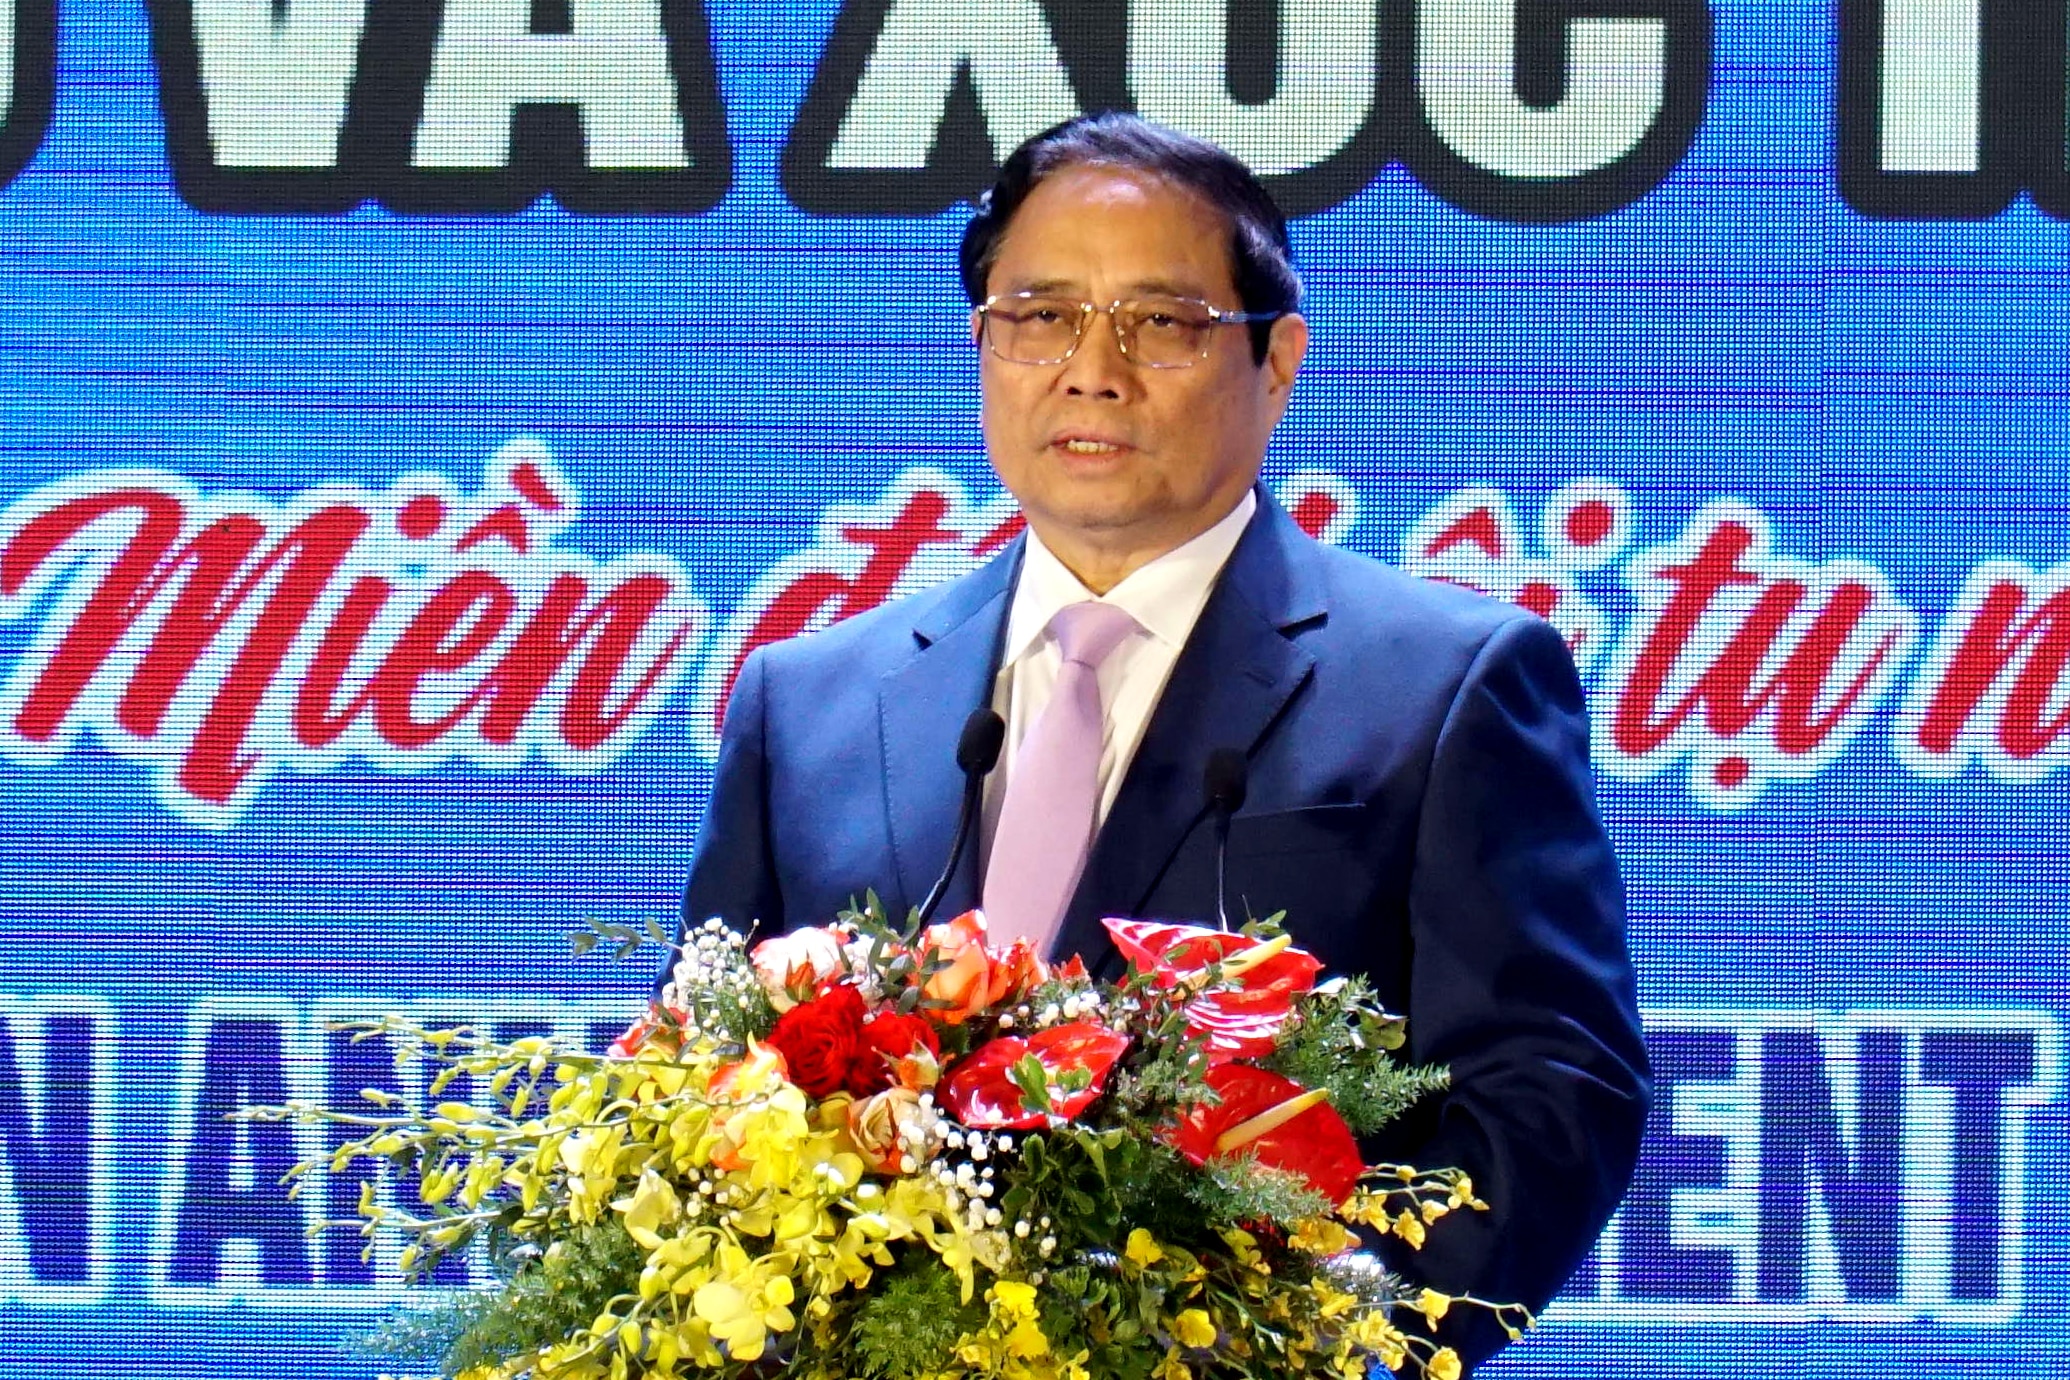 Thủ tướng Phạm Minh Chính phát biểu chỉ đạo tại hội nghị công bố quy hoạch tỉnh Ninh Thuận thời kỳ 2021-2030, tầm nhìn đến năm 2050 và xúc tiến đầu tư do UBND tỉnh Ninh Thuận tổ chức